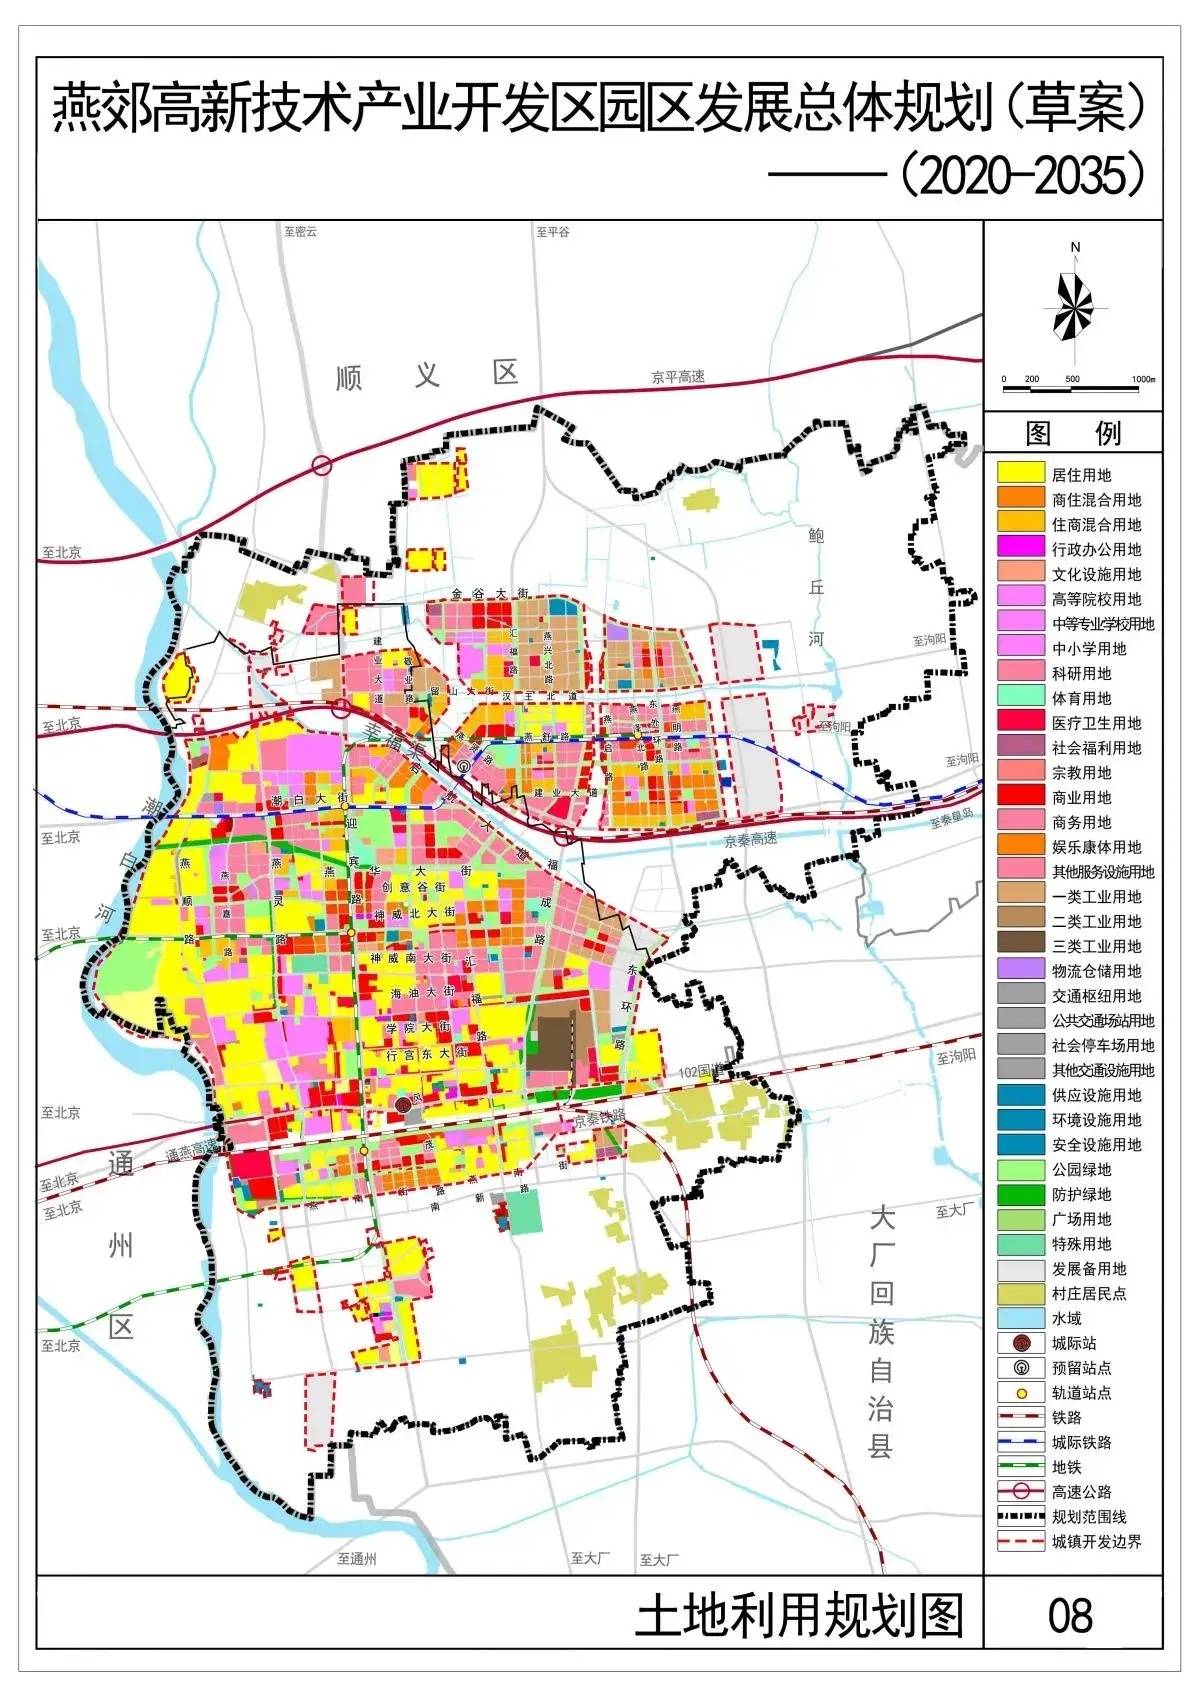 三河市燕郊镇行政地图图片